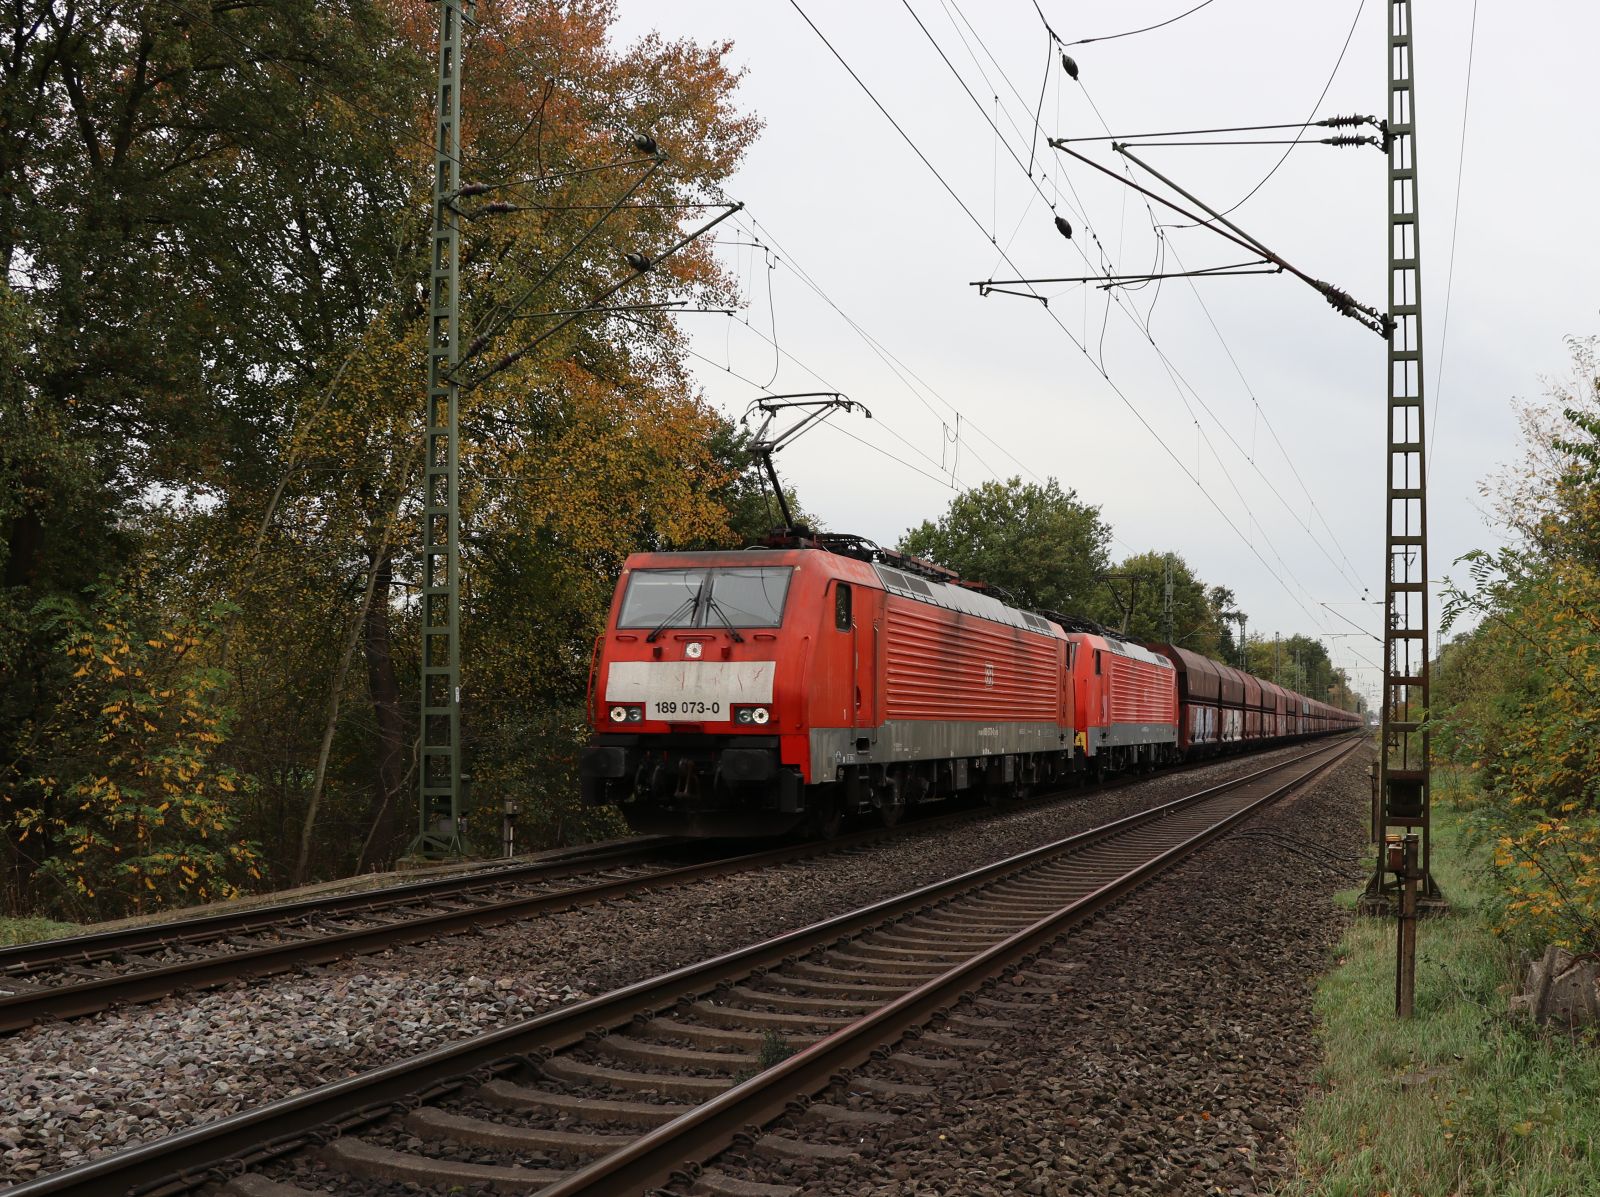 DB cargo Lokomotive 189 073-0 mit Schwesterlok Grenzweg, Hamminkeln 03-11-2022.

DB cargo locomotief 189 073-0 met zusterloc Grenzweg, Hamminkeln 03-11-2022.